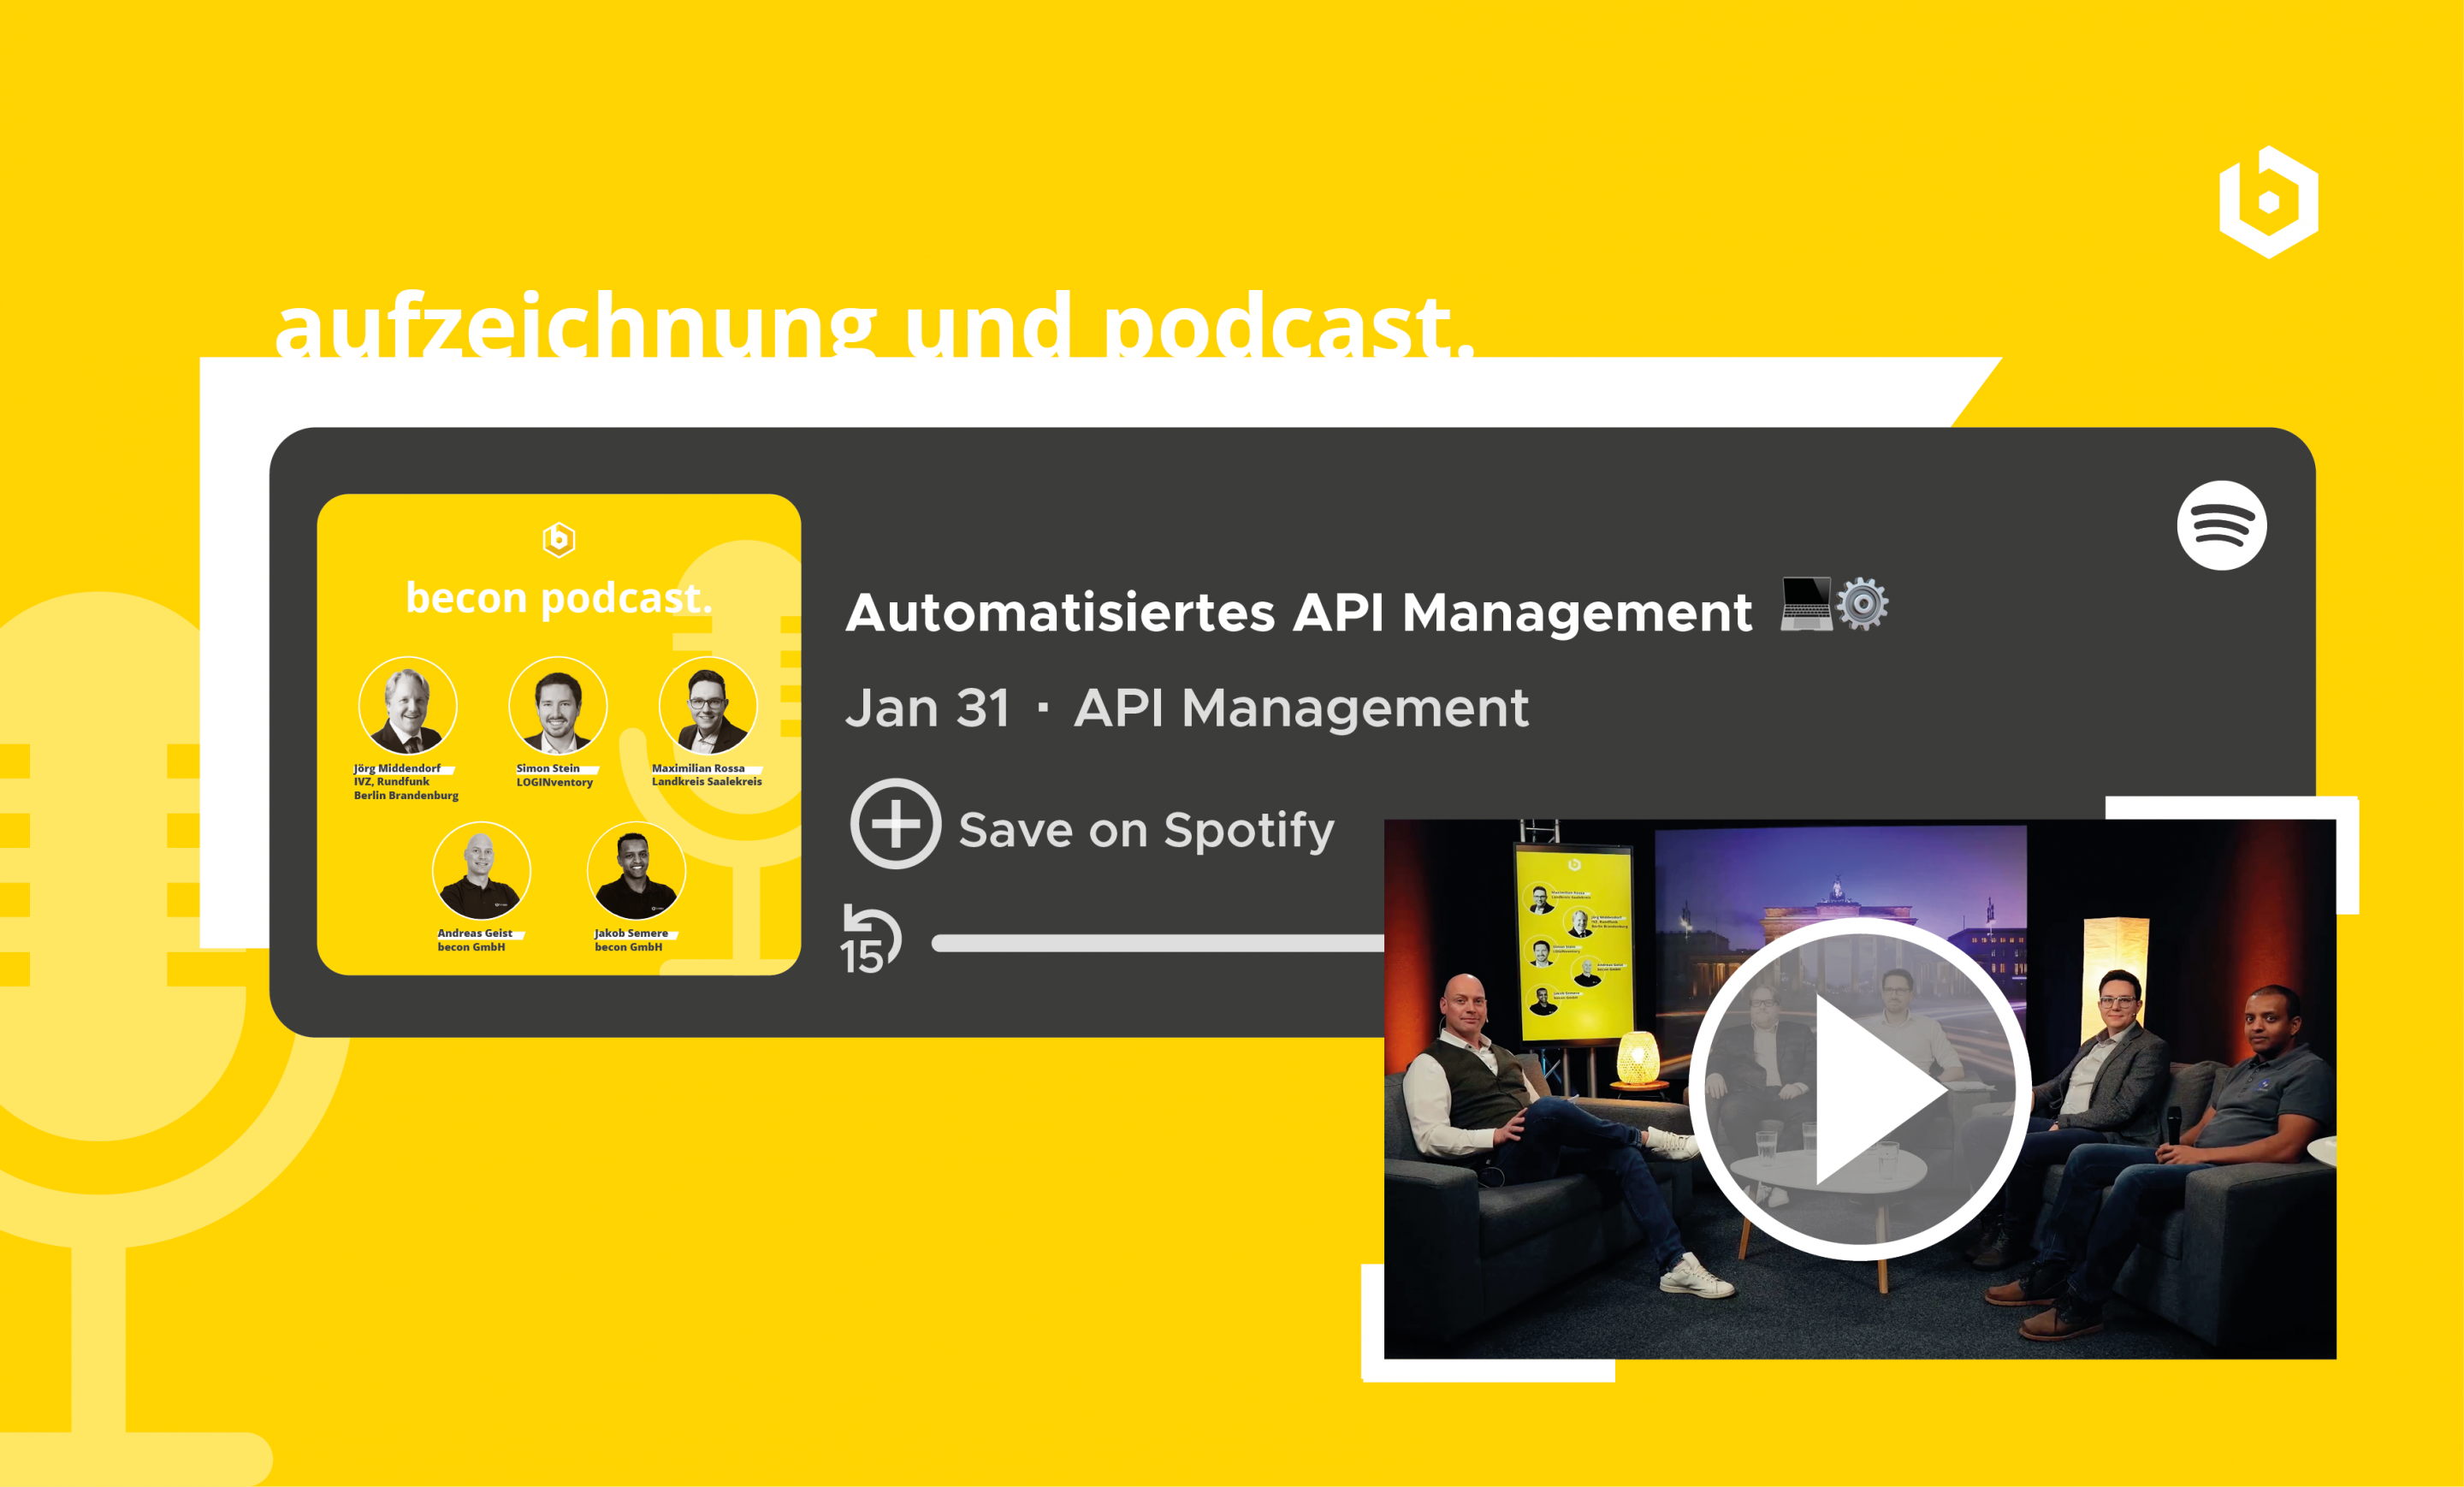 Video Aufzeichung und Podcast zum Thema "Automatisiertes API-Management"